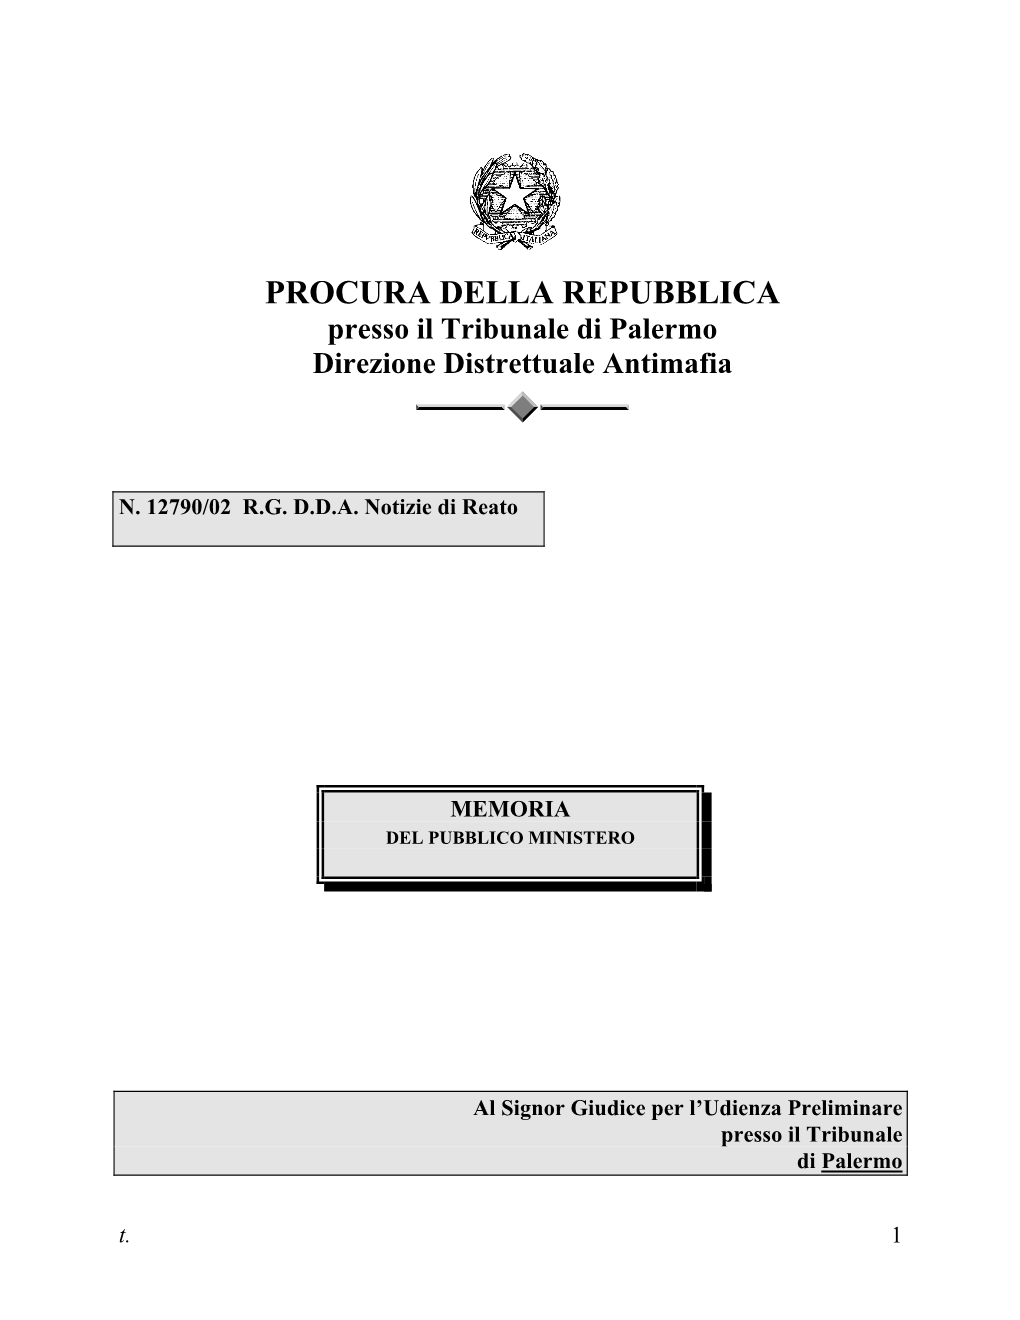 PROCURA DELLA REPUBBLICA Presso Il Tribunale Di Palermo Direzione Distrettuale Antimafia